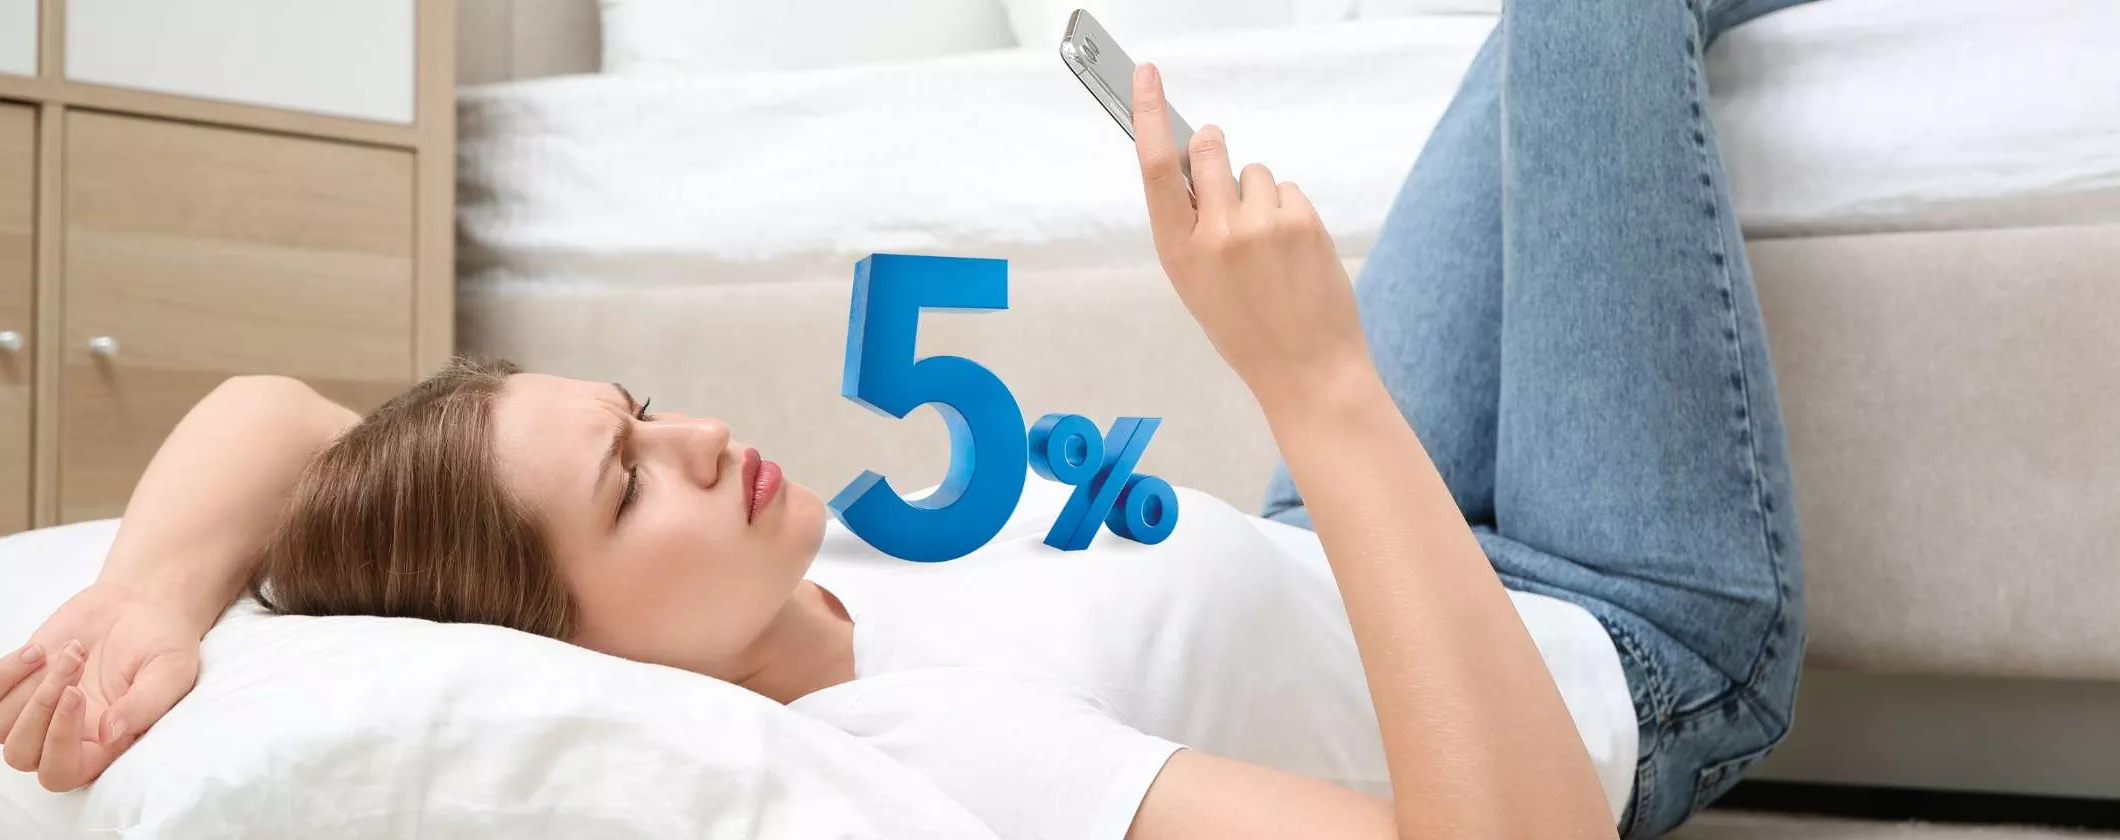 Apri SelfyConto: per te il 5% di INTERESSE annuo sui risparmi